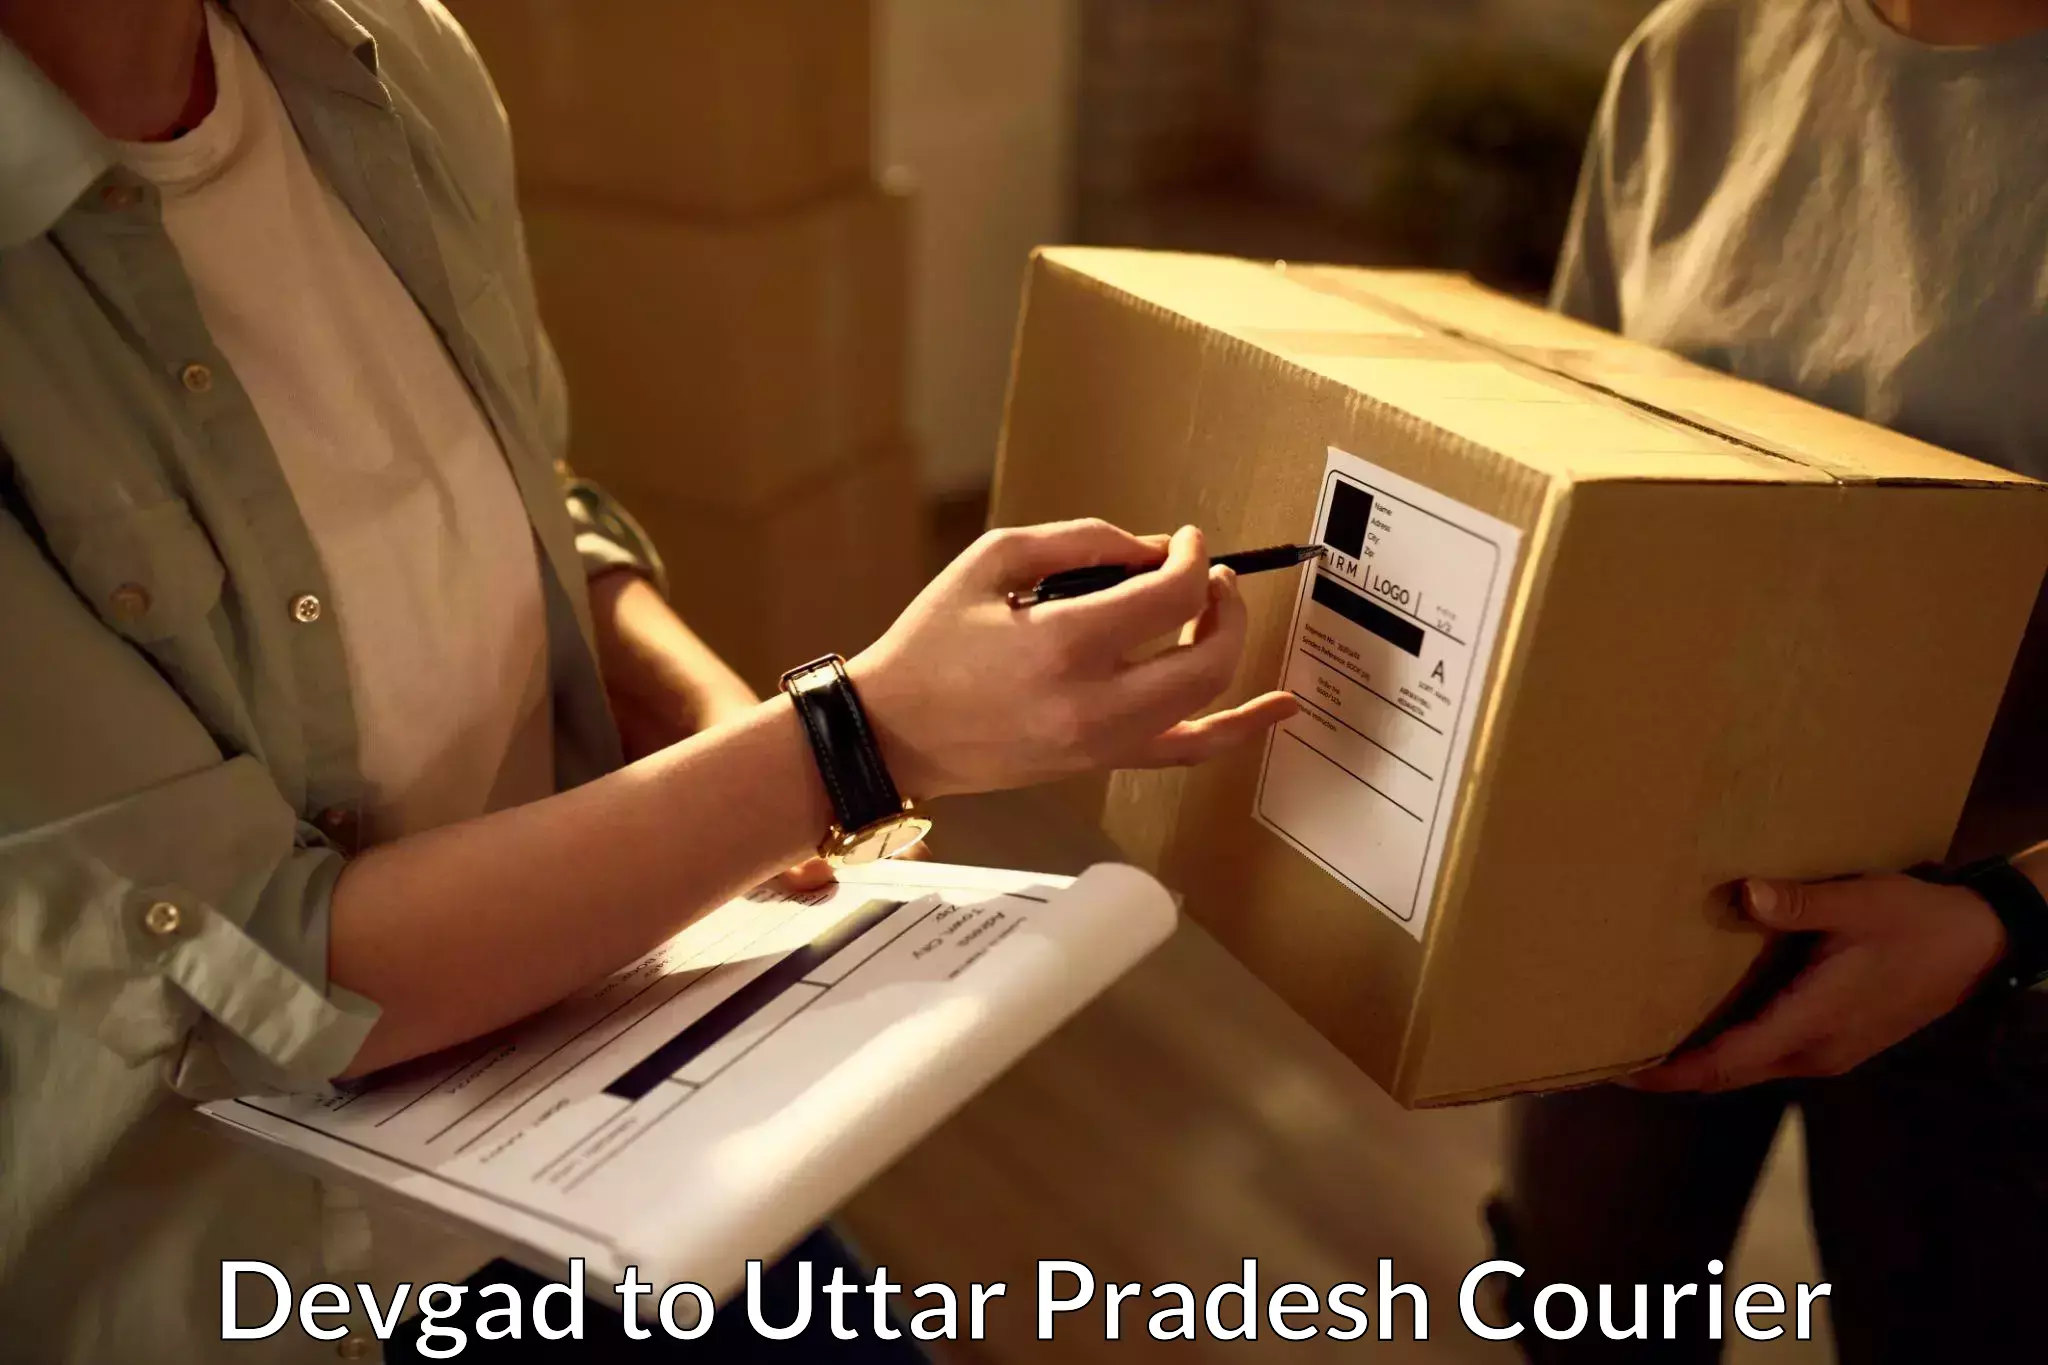 Efficient freight service Devgad to Uttar Pradesh